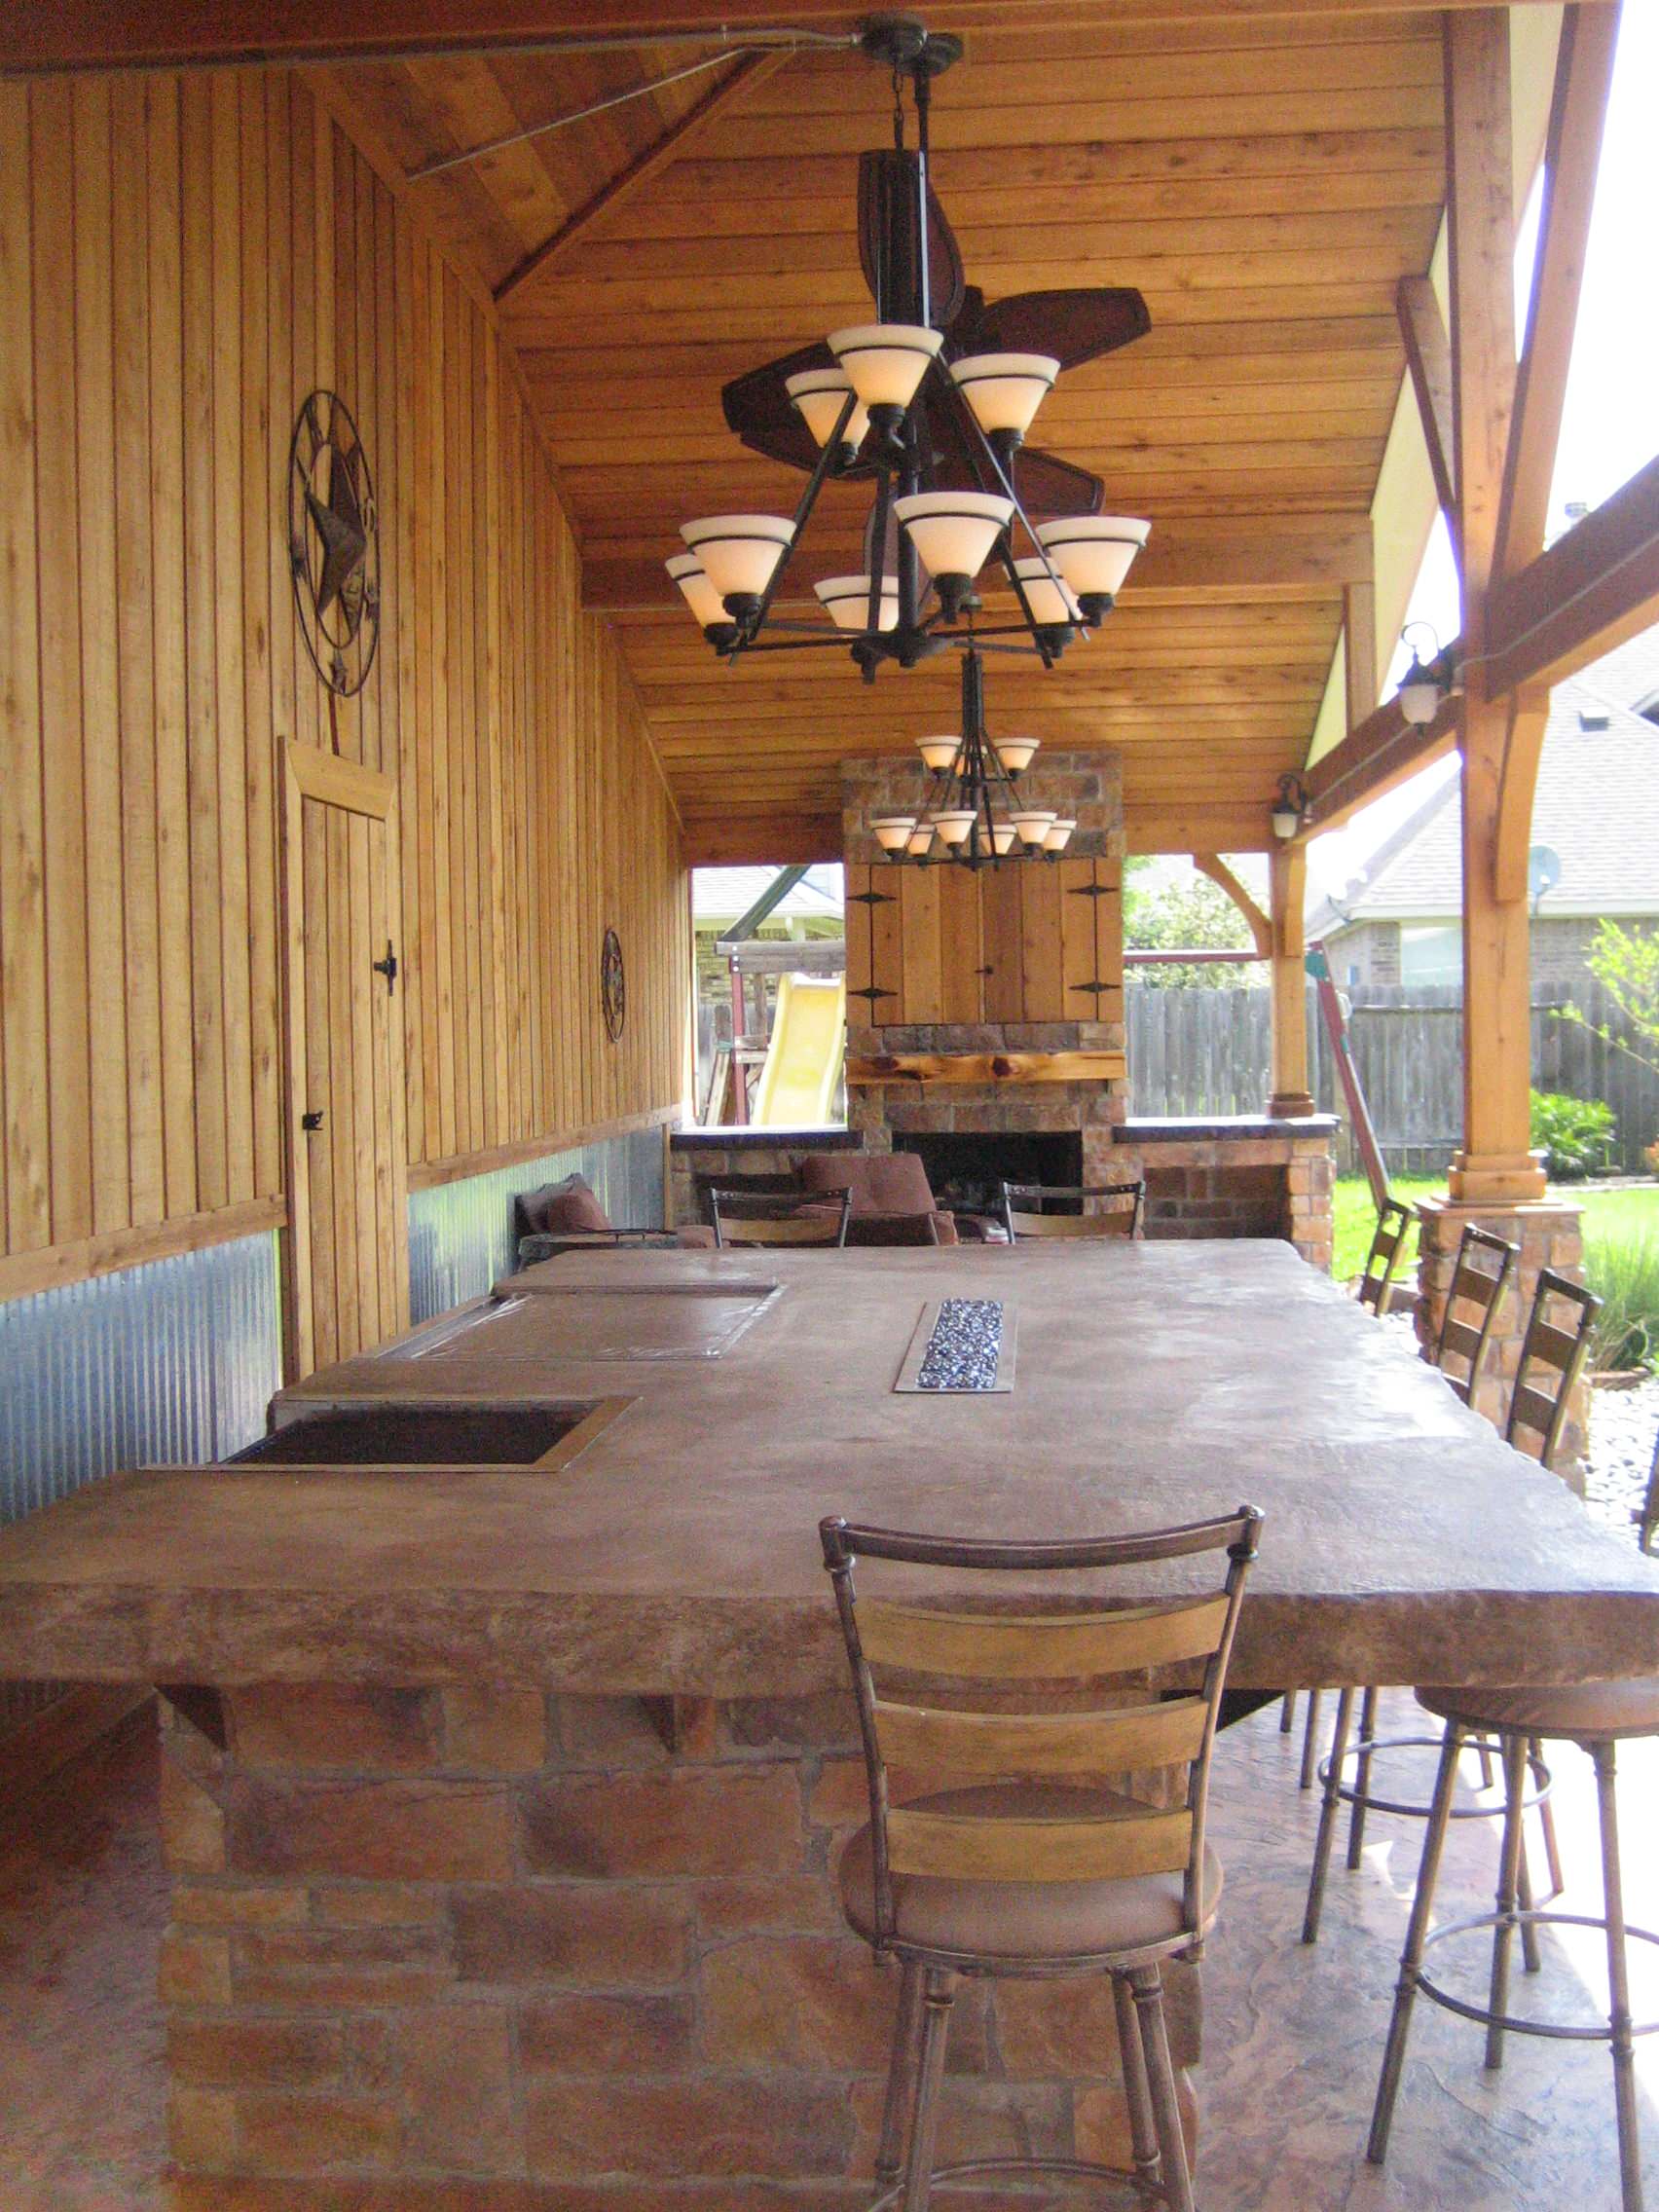 Indoor private Hibachi Grill/Table for entertaining  Hibachi grill,  Farmhouse kitchen design, Grill design